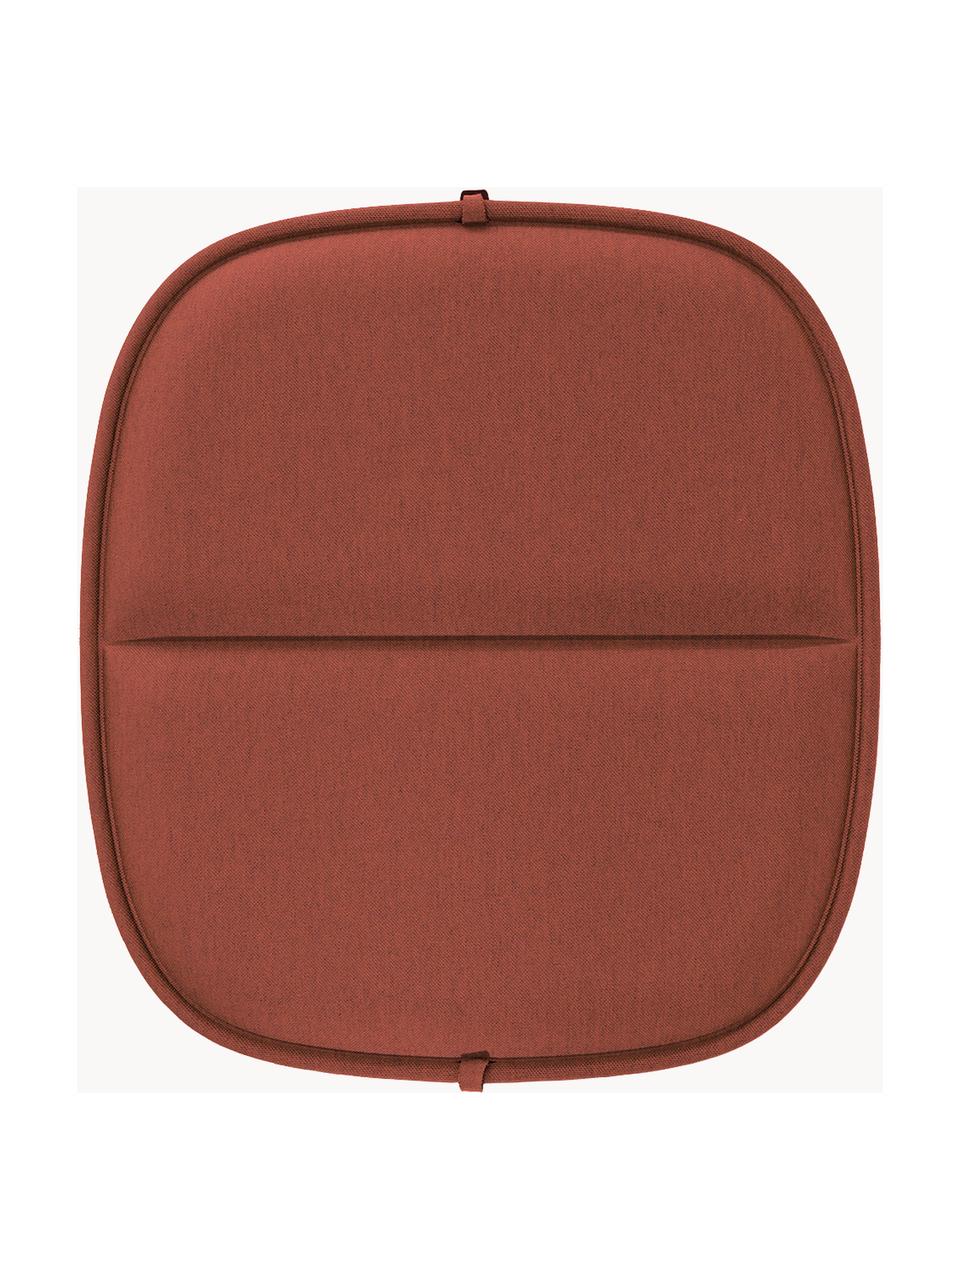 Zewnętrzna poduszka na siedzisko Hiray, Tapicerka: 50% poliakryl, 45% polies, Rdzawoczerwony, S 43 x D 47 cm